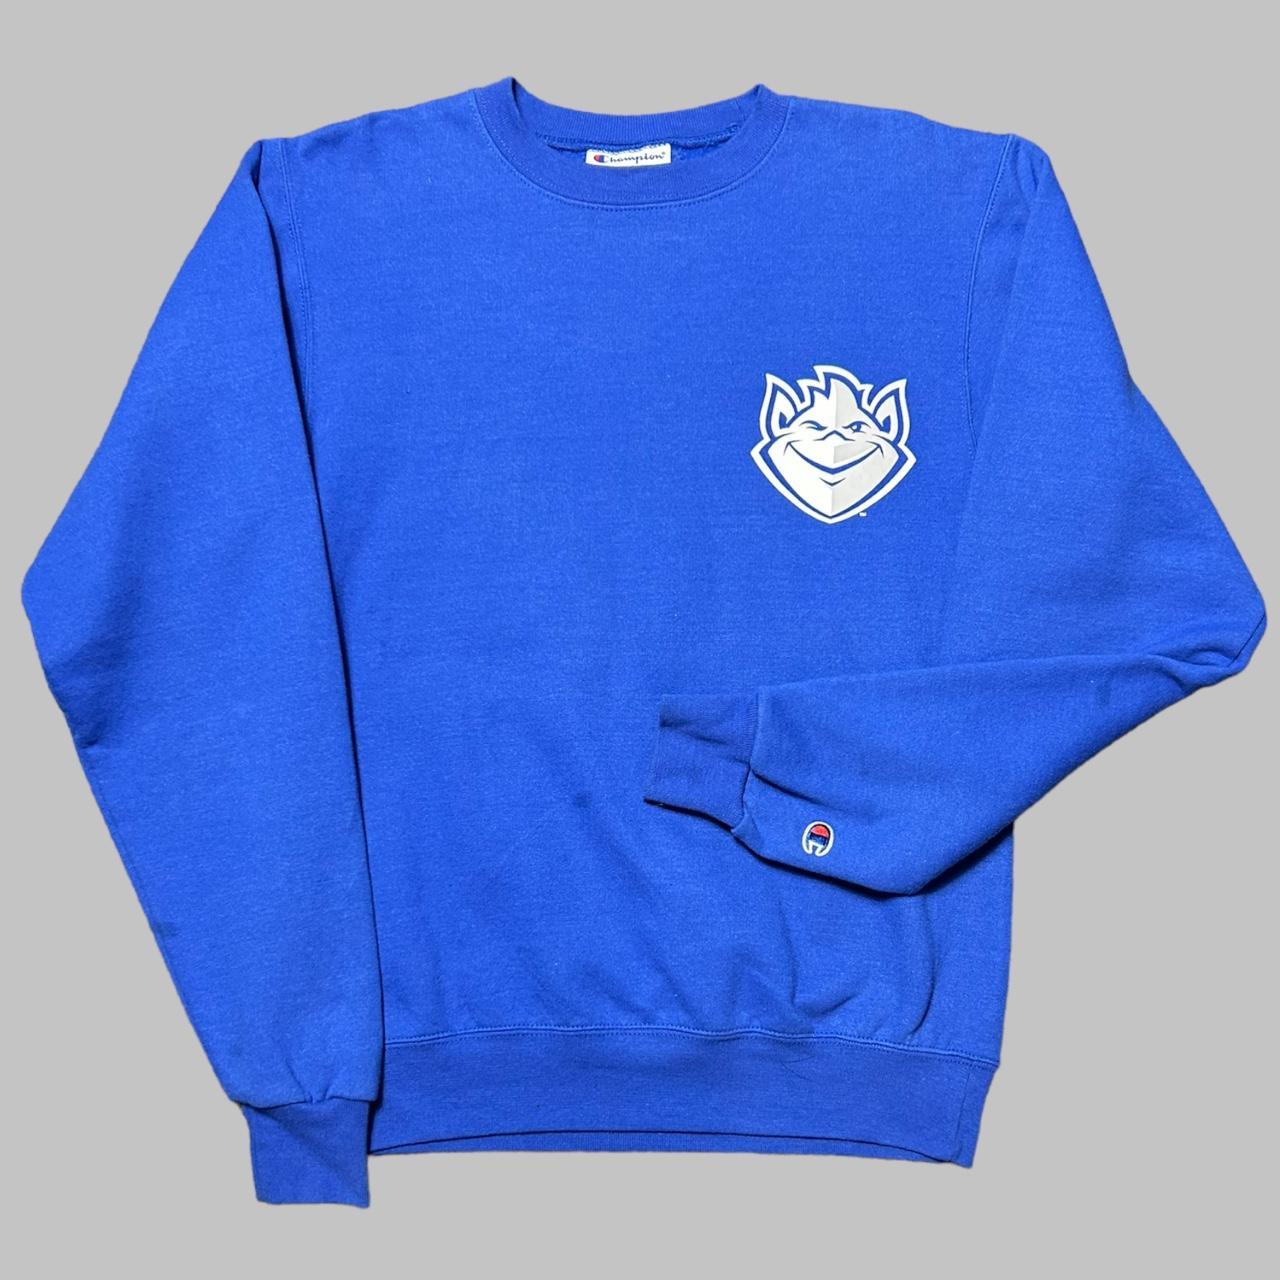 Blue champion sweatshirt Brilliant blue colour... - Depop